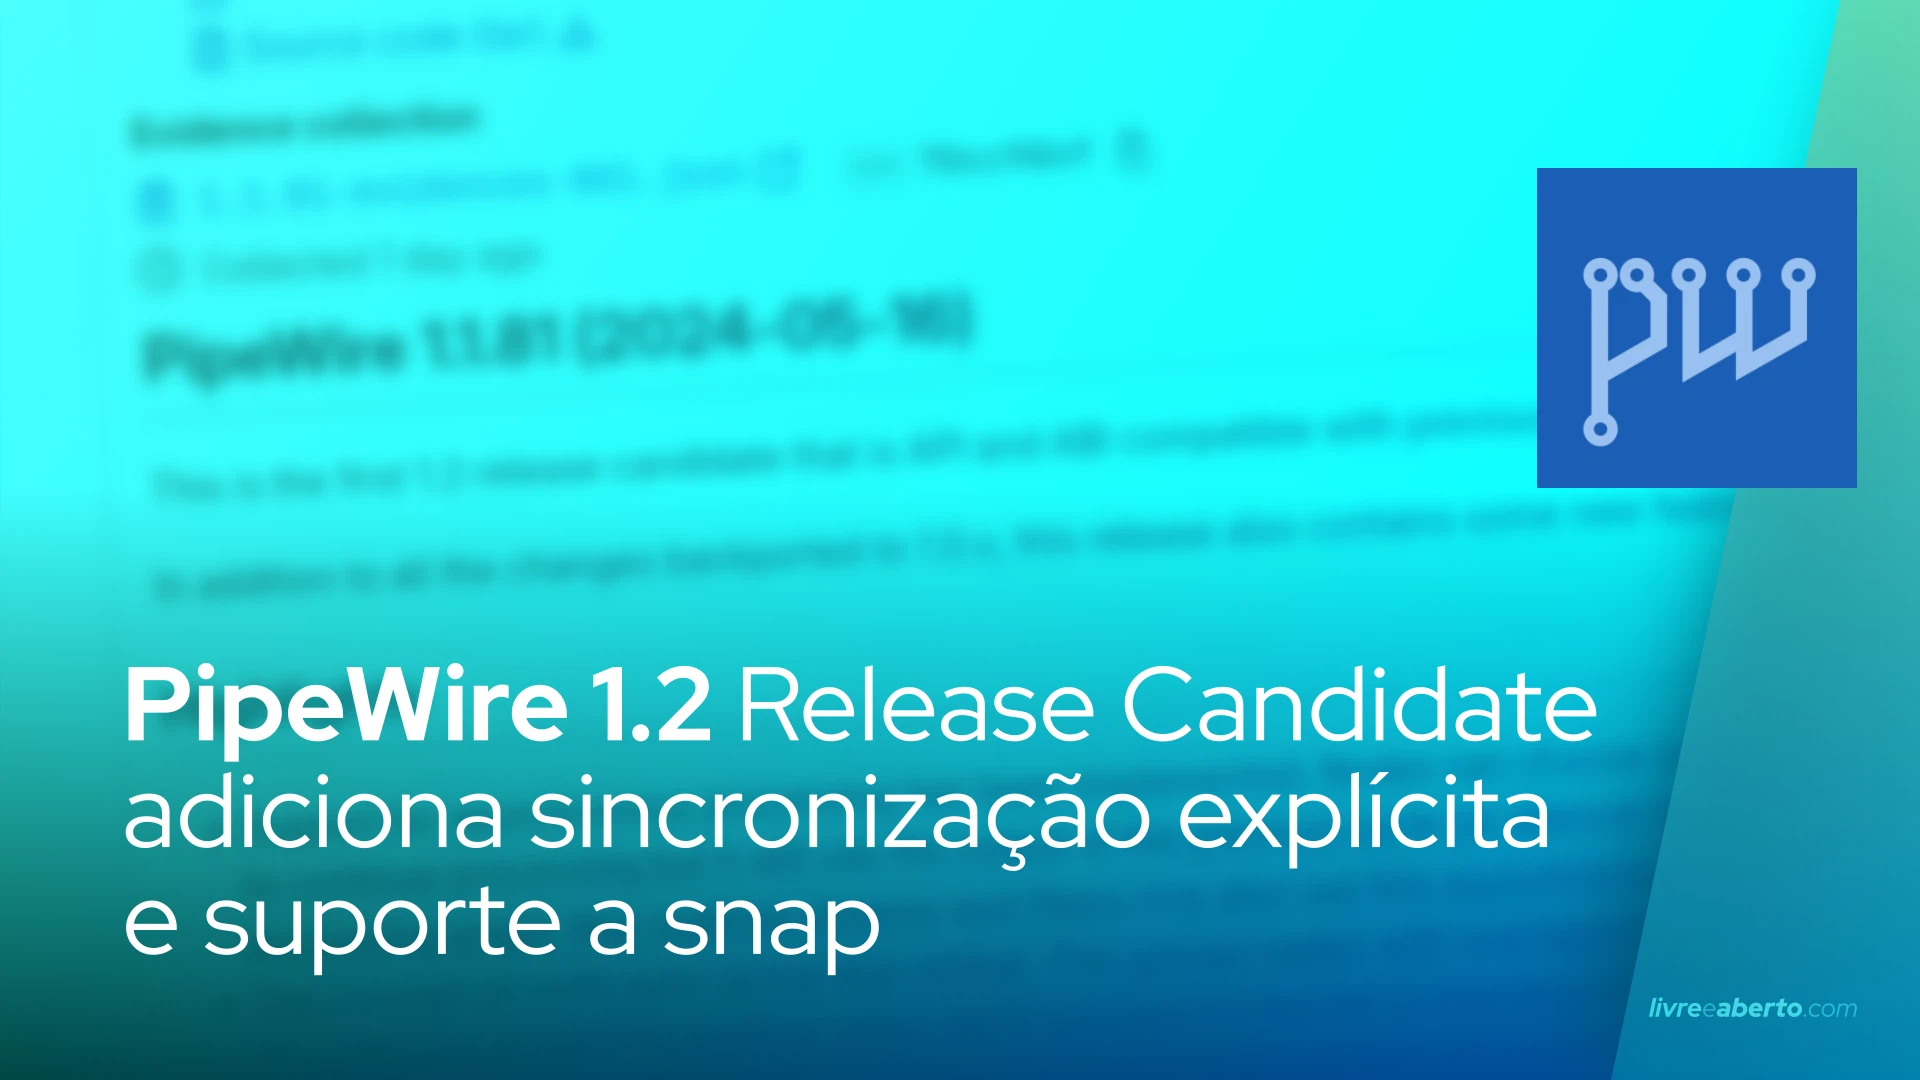 PipeWire 1.2 Release Candidate adiciona sincronização explícita e suporte a snap